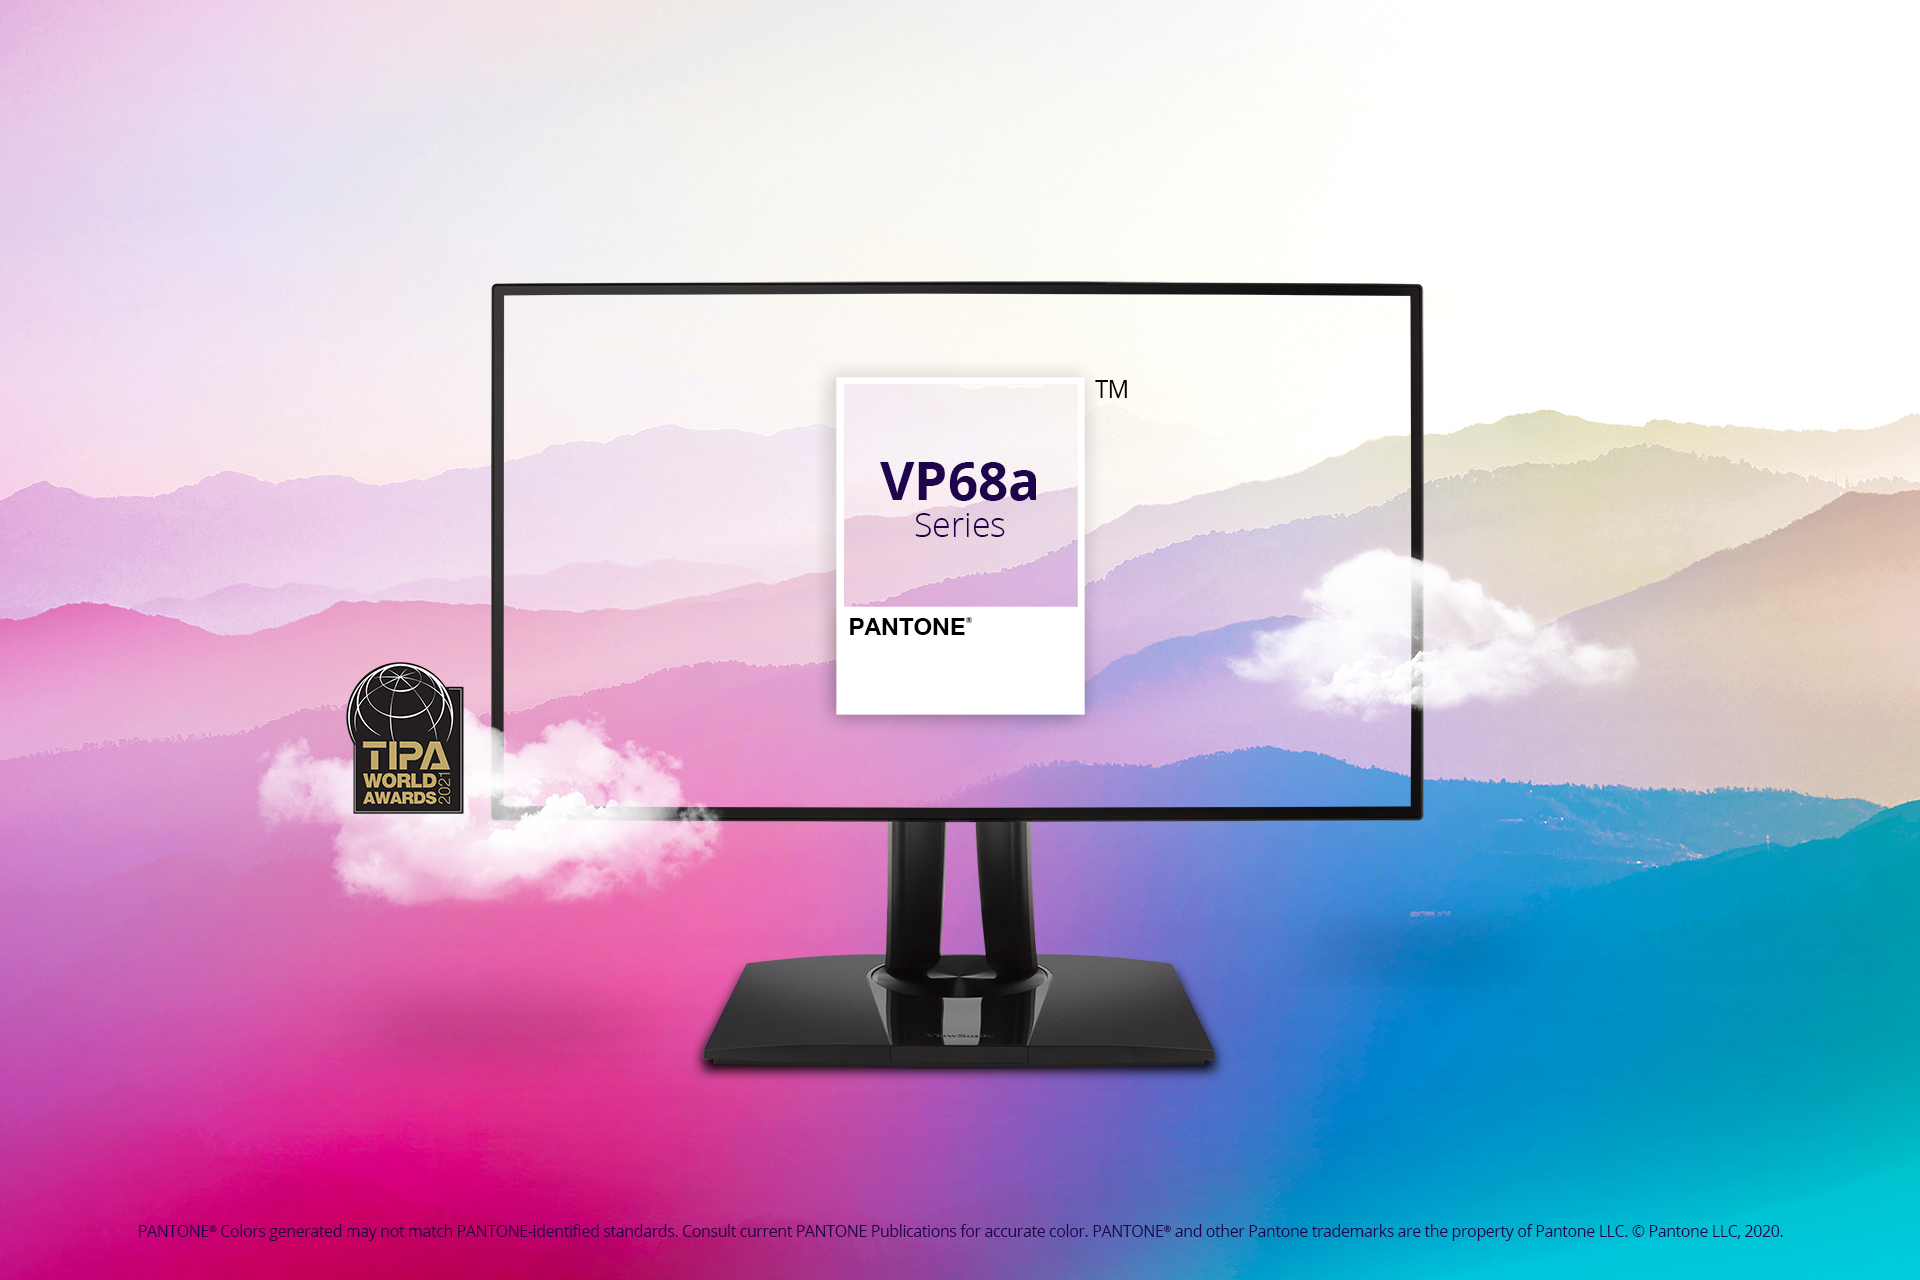 ViewSonic đạt giải màn hình thiết kề đồ họa xuất sắc nhất tại TIPA World Awards 2021